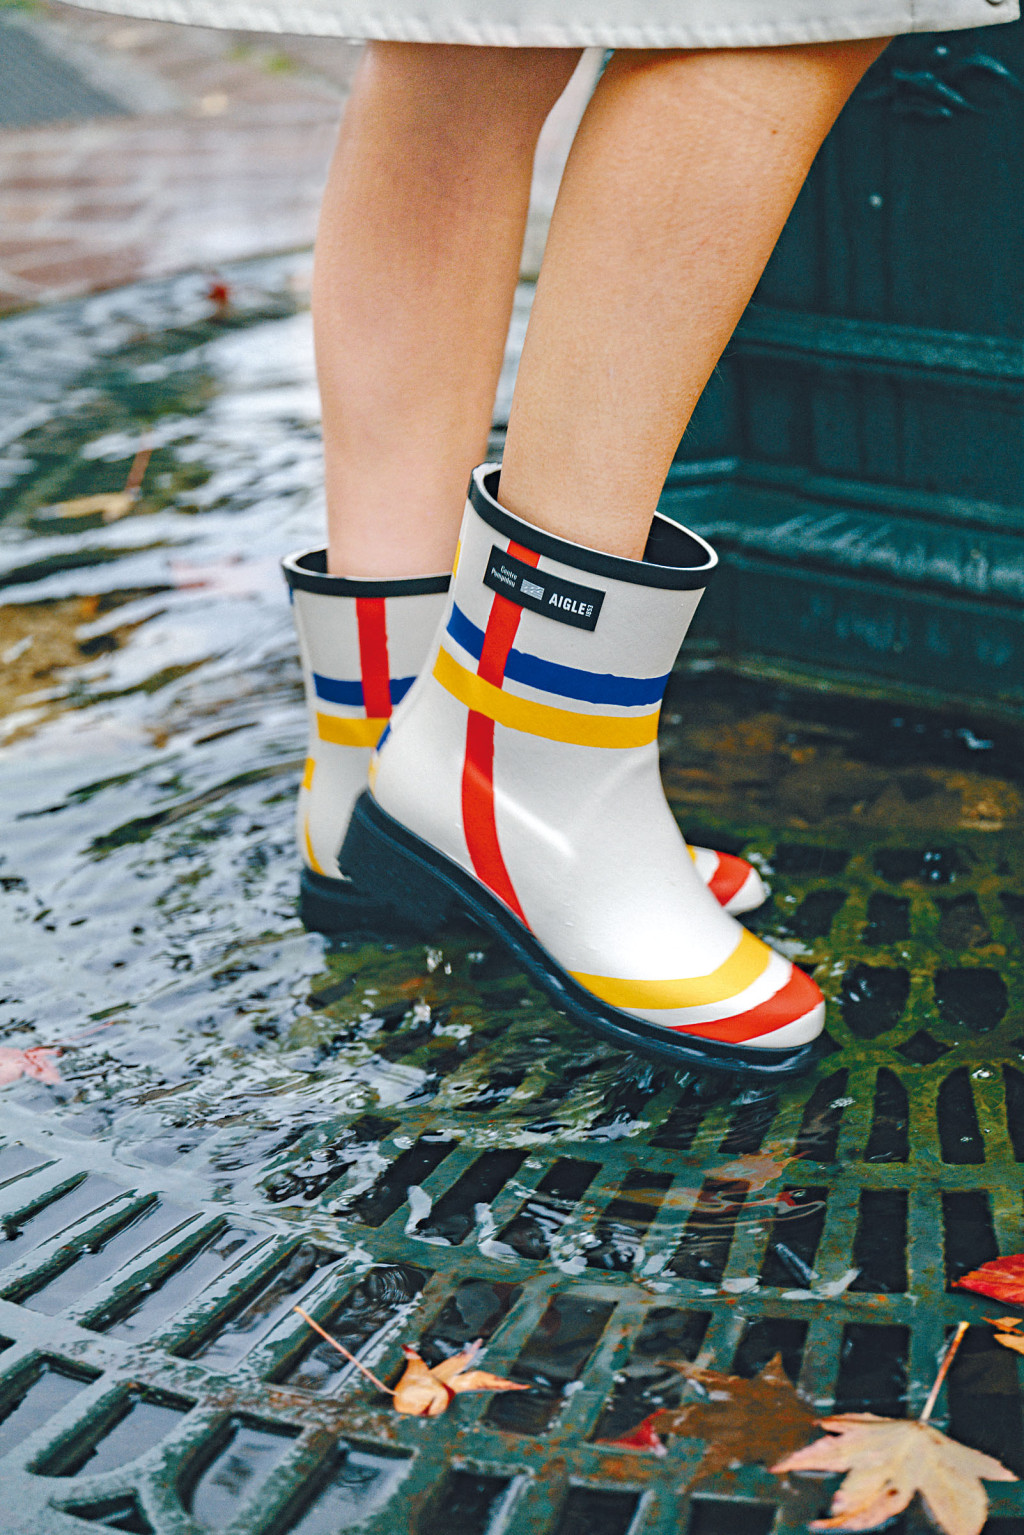 法国制手工天然橡胶女装靴/$2,280，靴身饰以荷兰艺术大师Piet Mondrian名作《New York City》的色彩綫条图案；Aigle会员购物满指定金额可获赠摺叠雨伞。（Aigle）